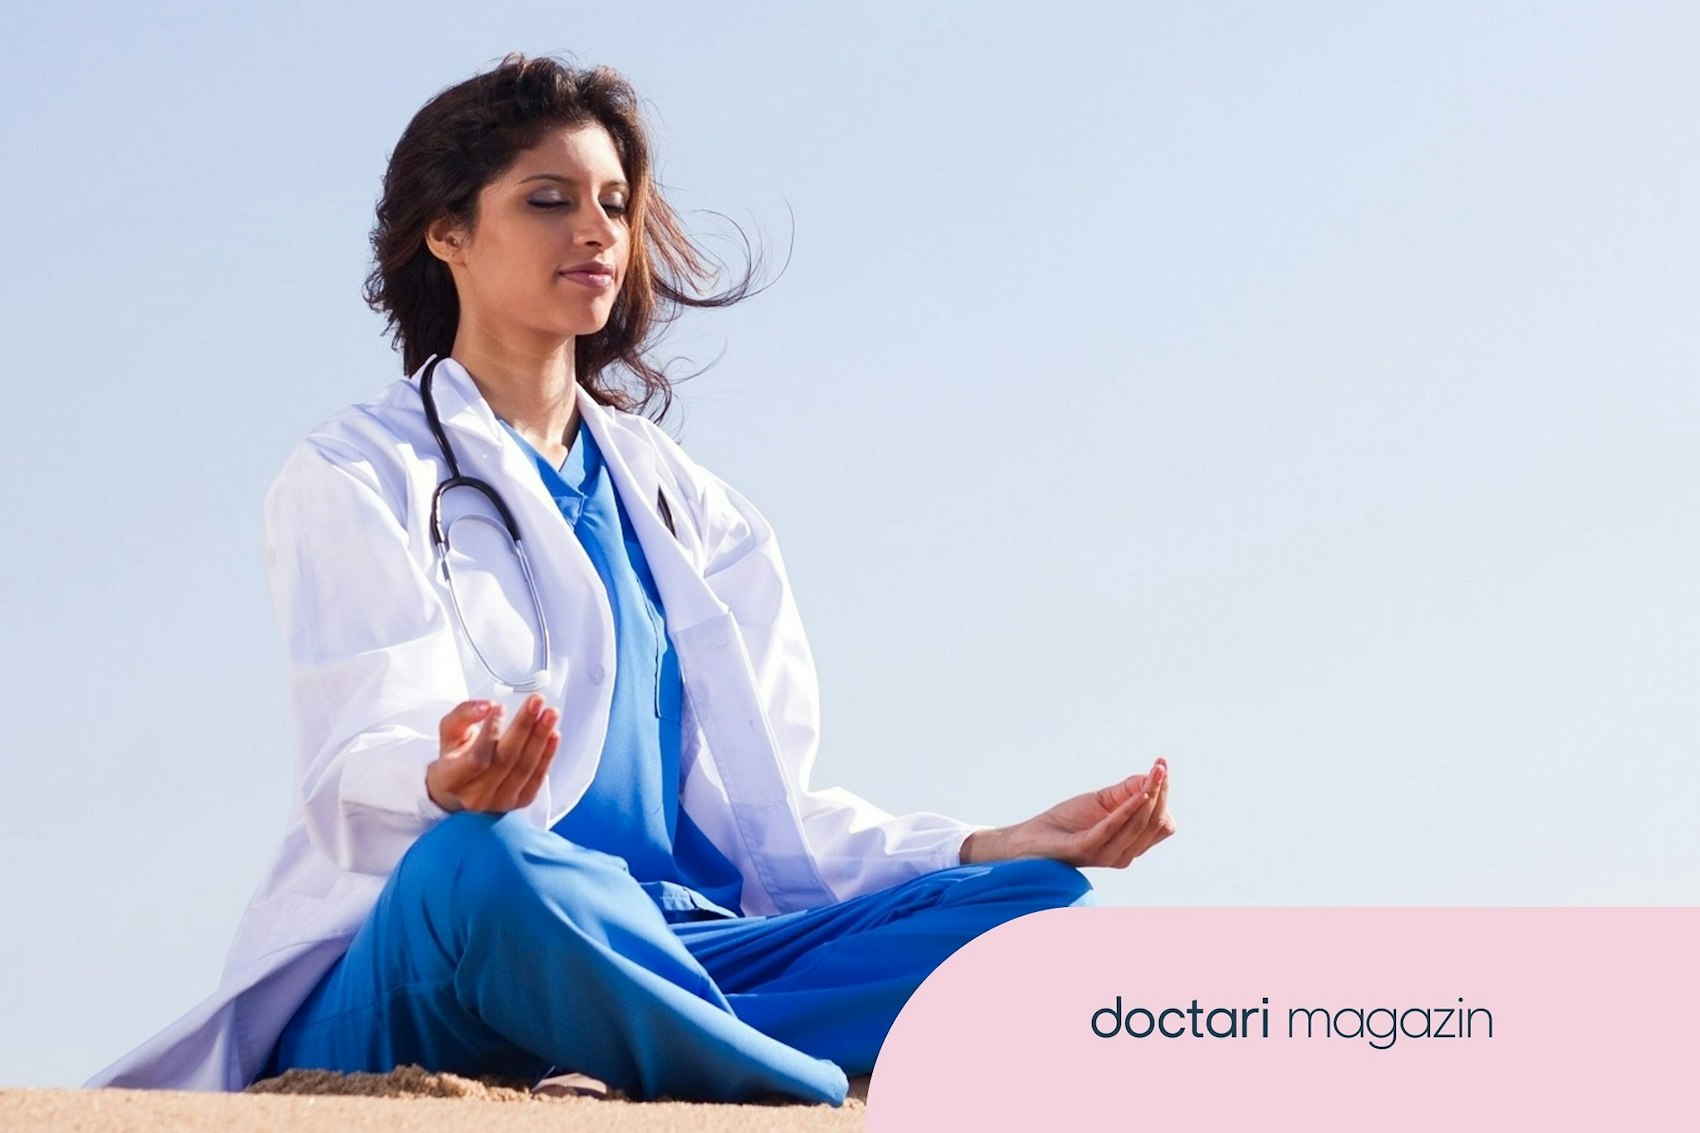 Eine junge Ärztin sitzt im Schneidersitz mit den Händen in einer meditativen Haltung unter freiem Himmel.